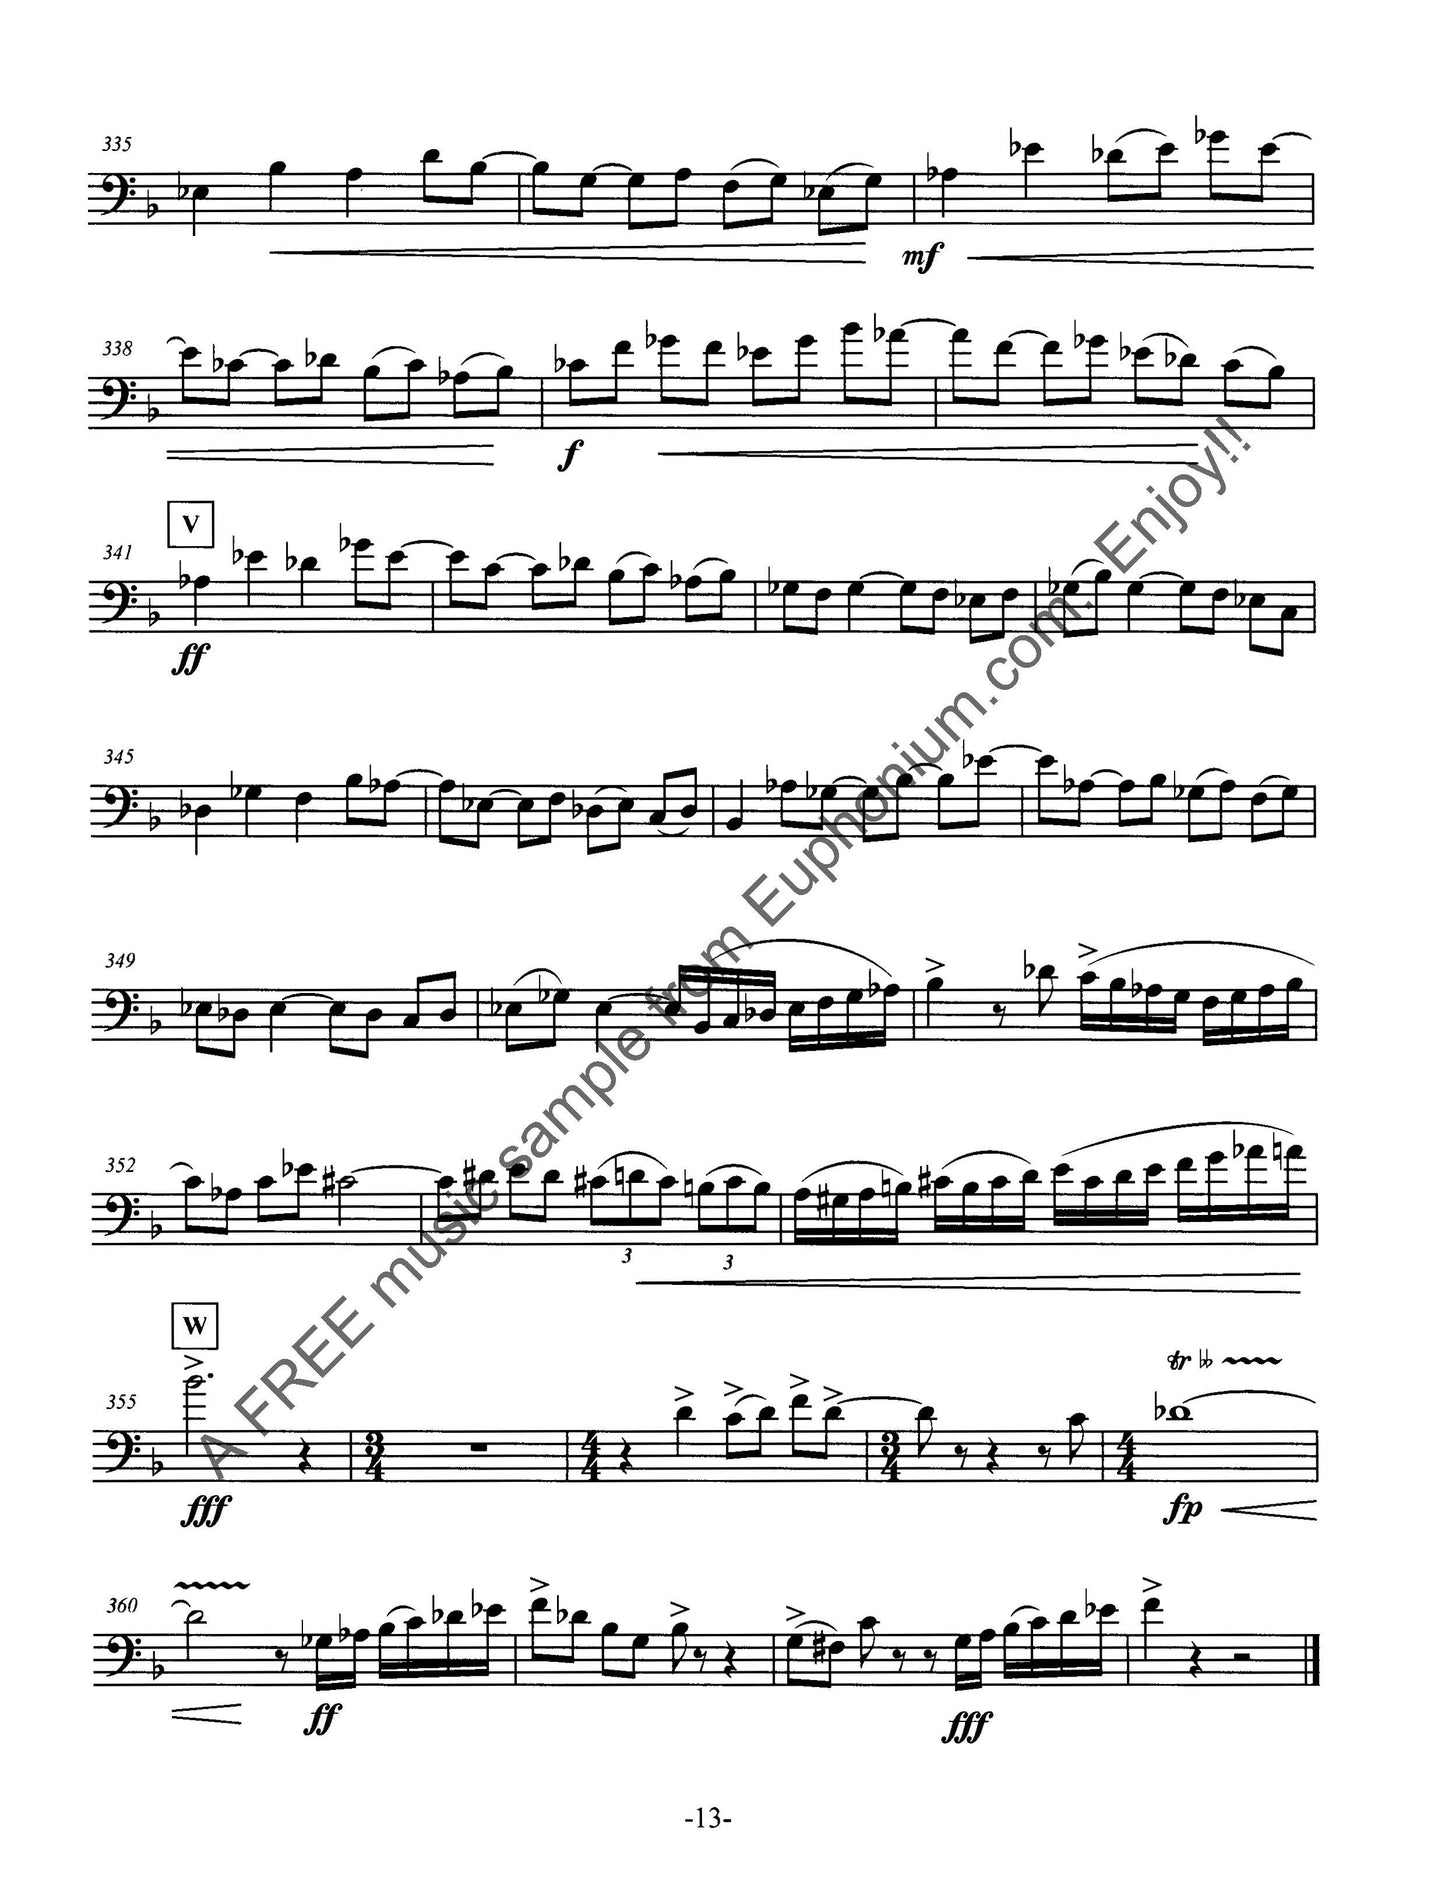 Brusick - Concerto for Euphonium